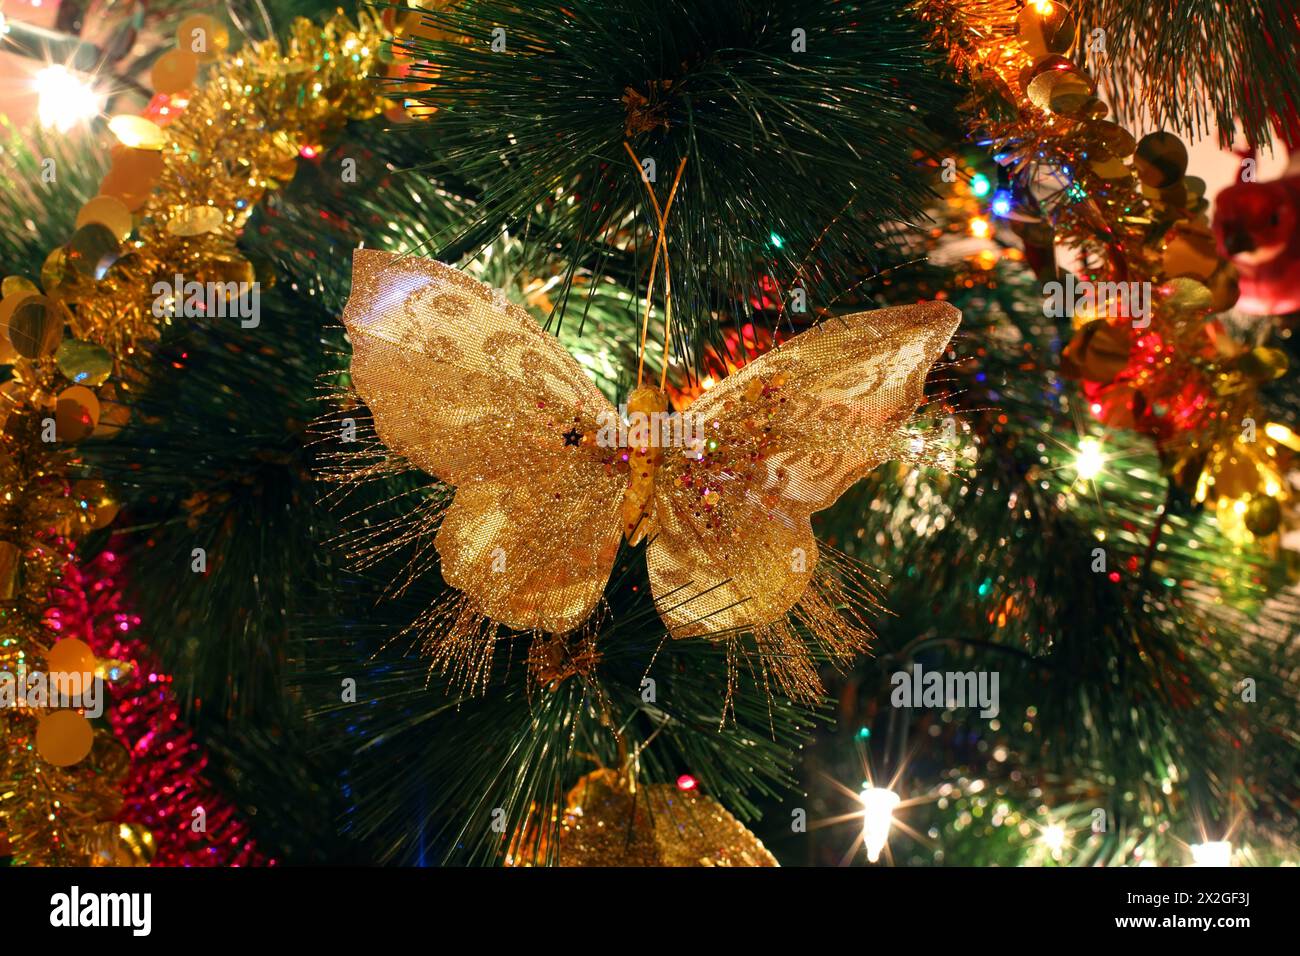 Christmas tree ornaments, bright shiny butterfly, illuminations Stock Photo